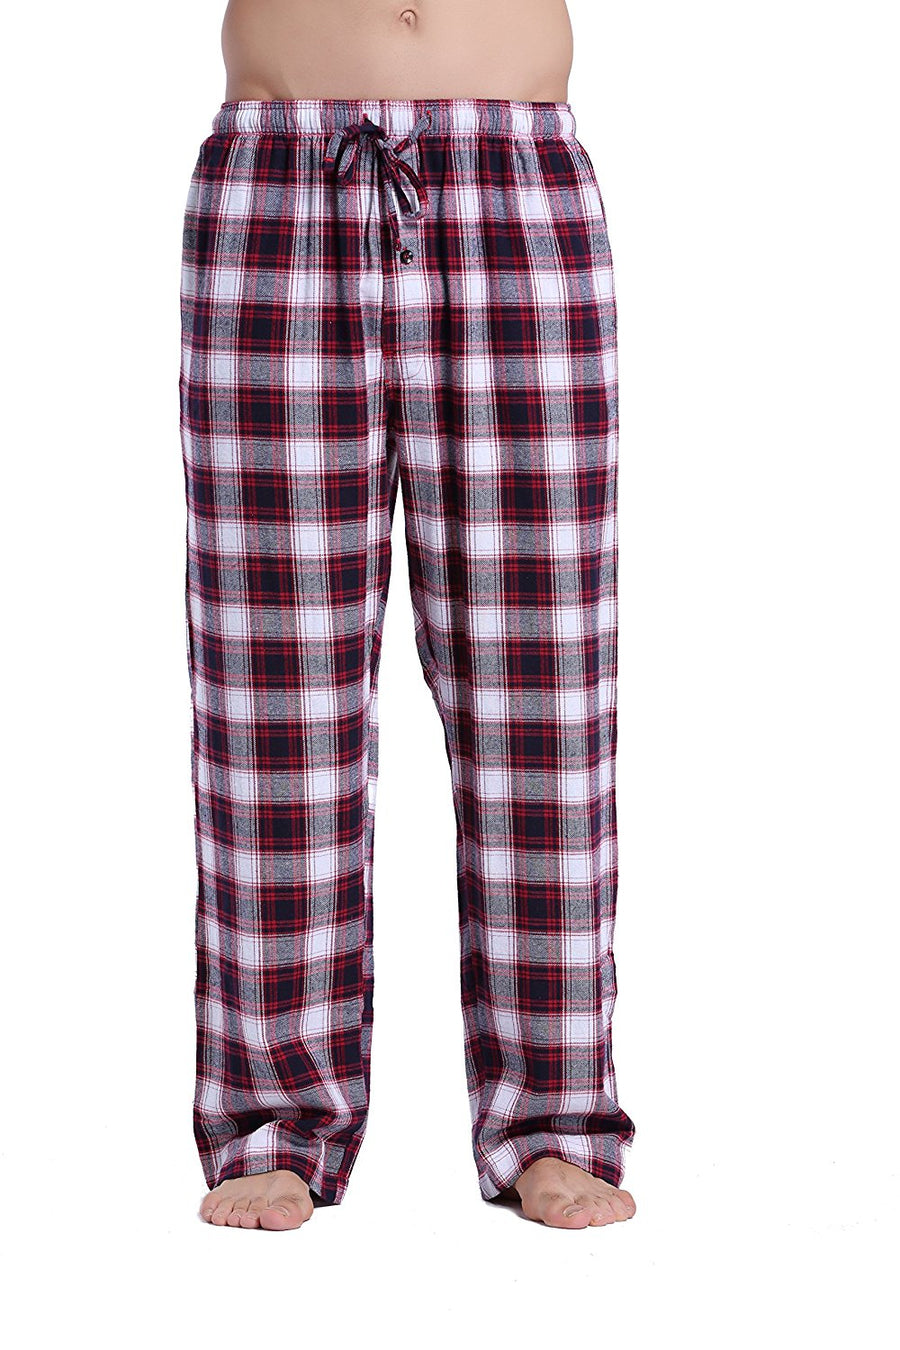 YINC Men's 100% Cotton Super Soft Flannel Pajama Pants : :  Clothing, Shoes & Accessories